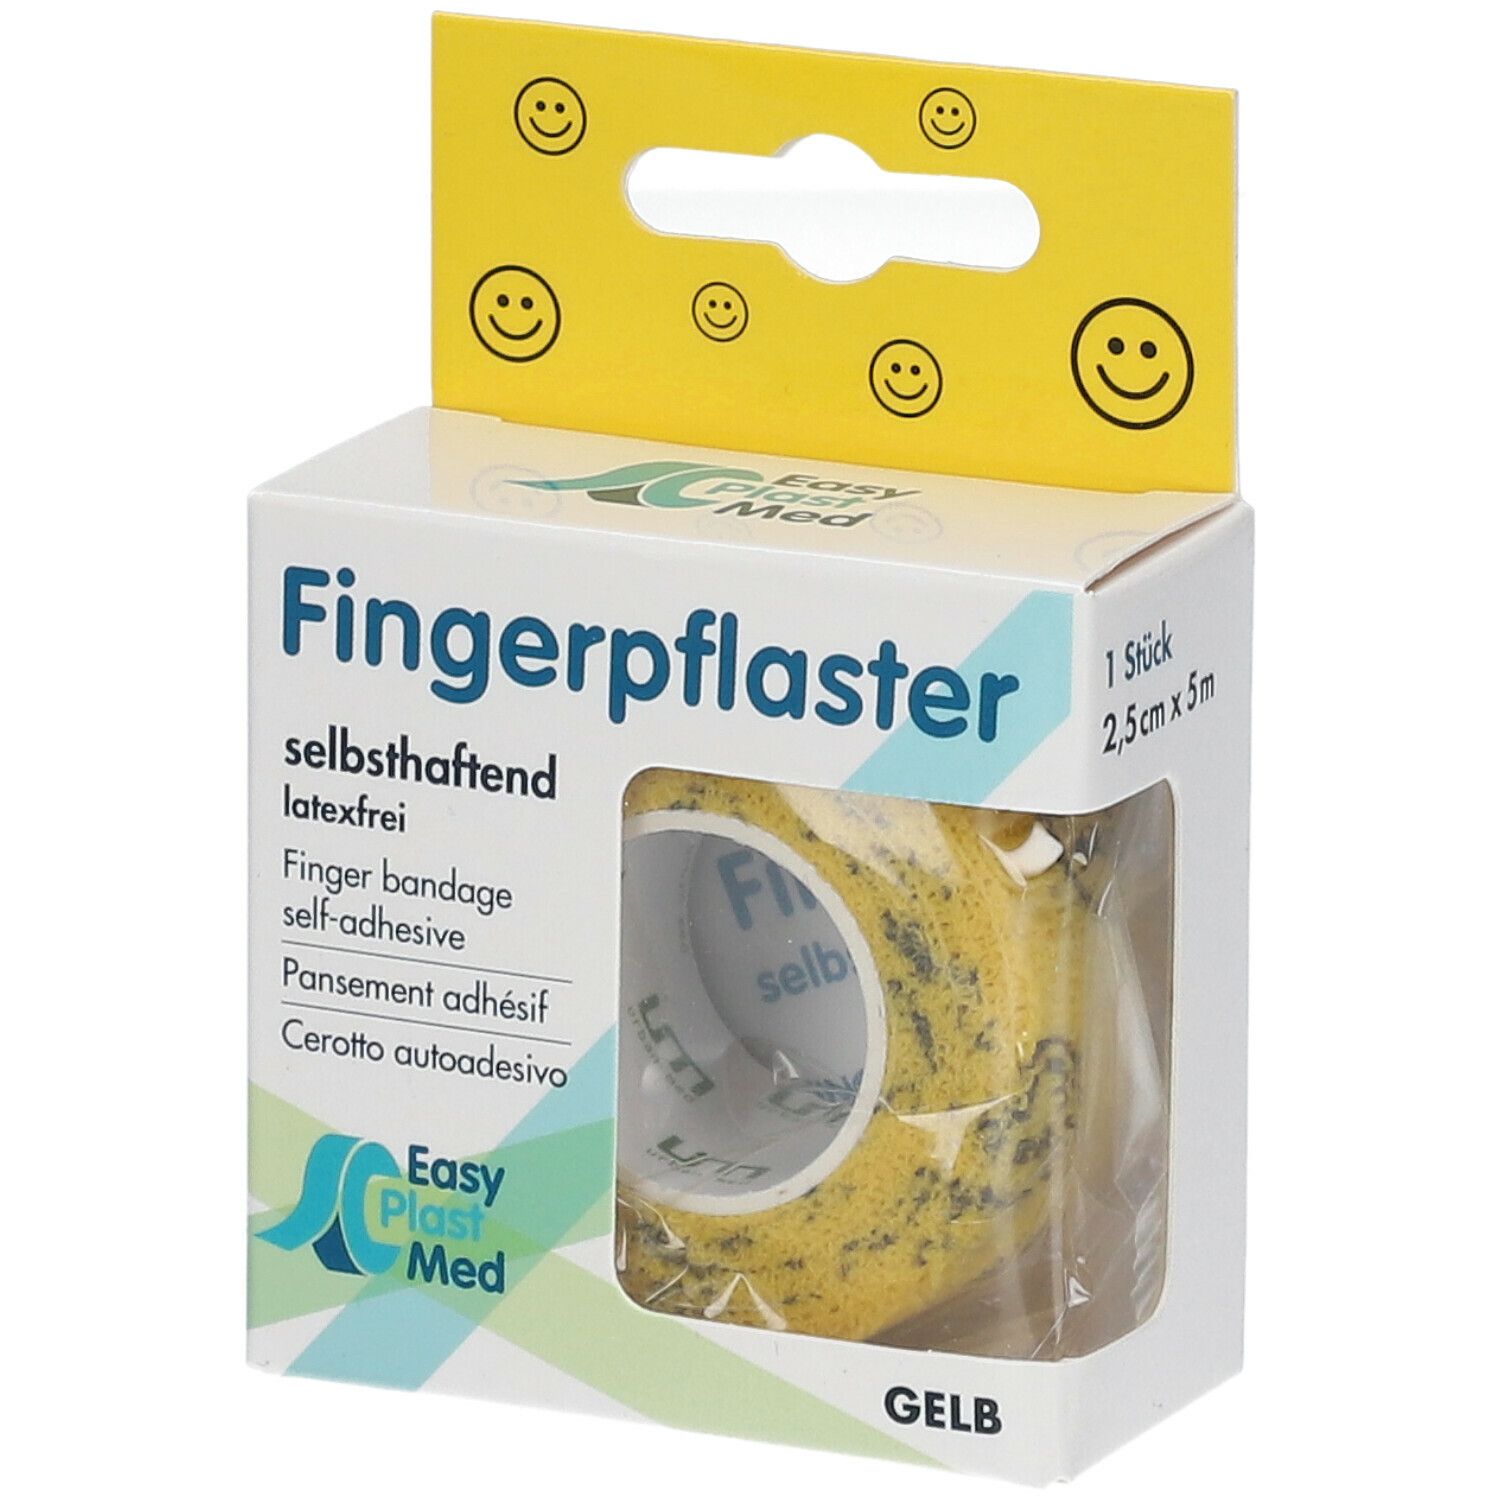 Easy Plast Med Fingerpflaster 2,5 cm x 5 m gelb Smileys 1 St - SHOP APOTHEKE